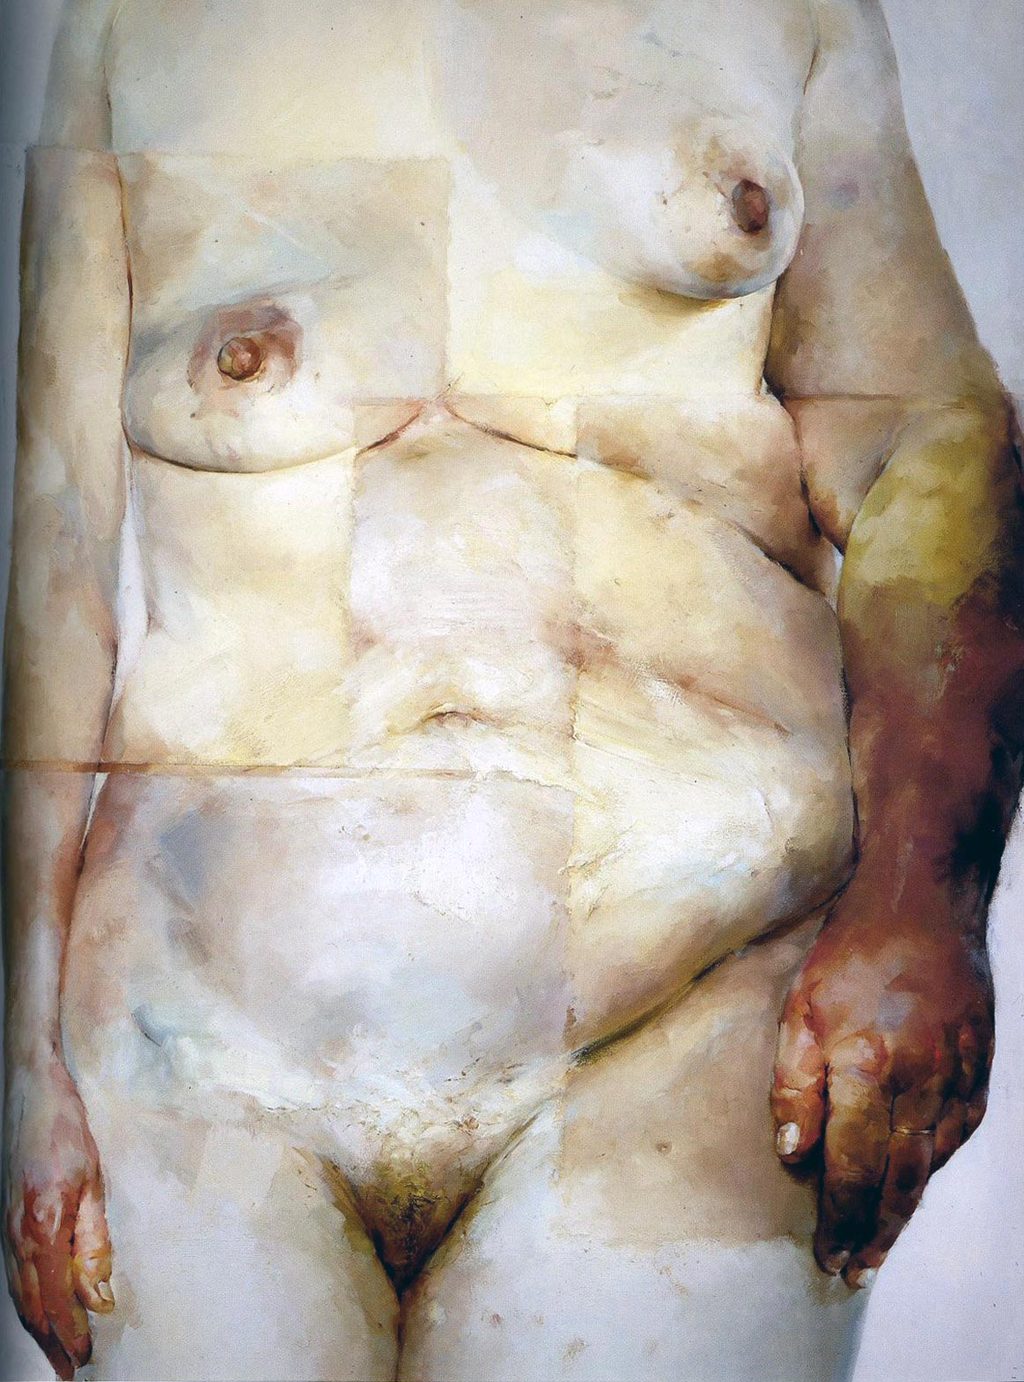 Jenny Saville – Hybrid, 1997, Oil on canvas, 274.3 x 213.4 cm